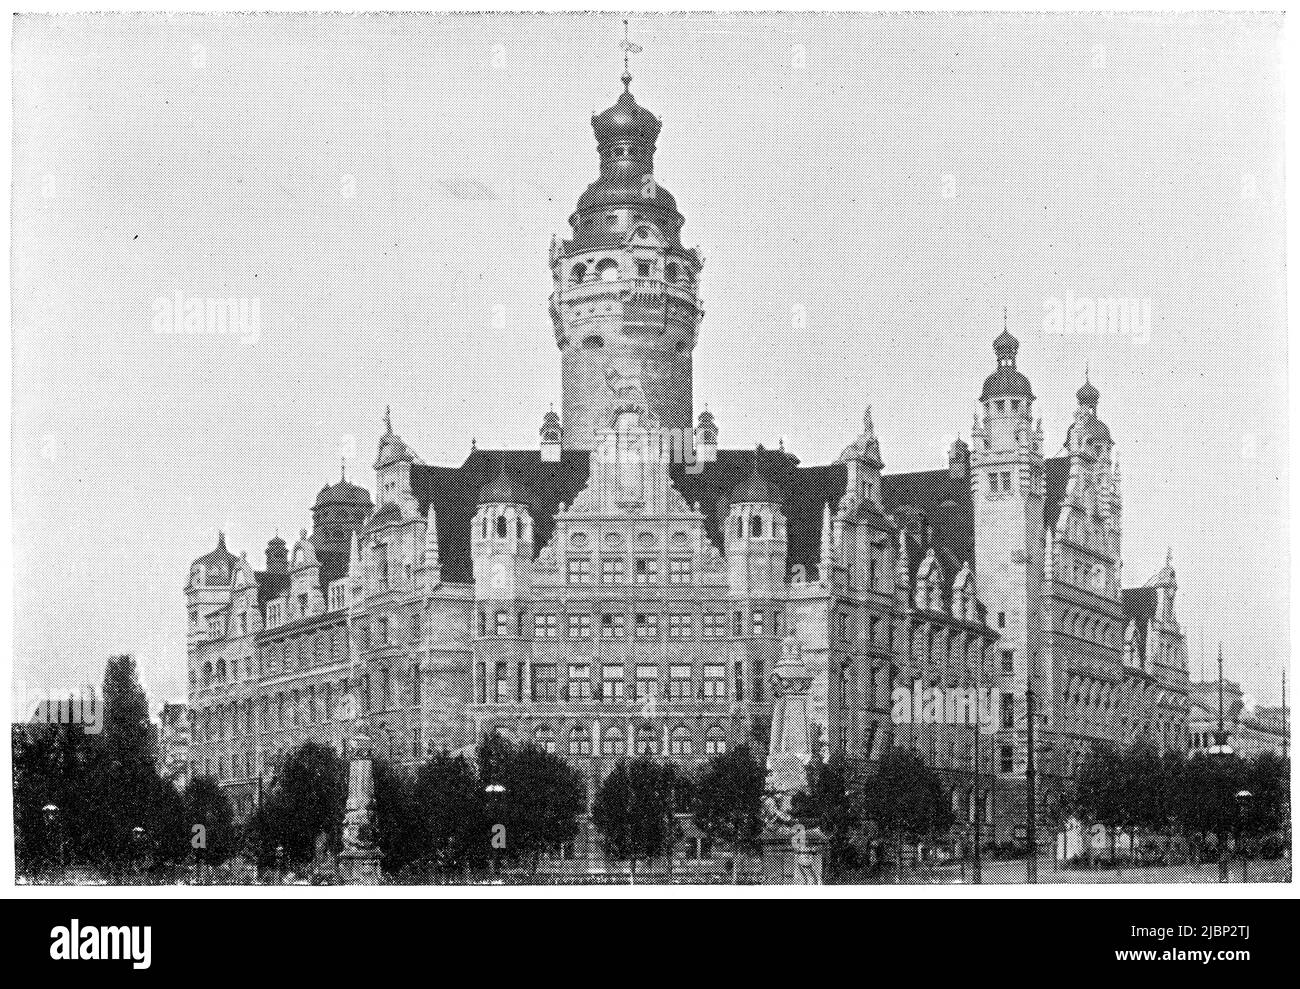 Nuevo Ayuntamiento de Leipzig (Neues Rathaus) por el arquitecto Hugo Georg Licht. Publicación del libro 'Meyers Konversations-Lexikon', Volumen 2, Leipzig, Alemania, 1910 Foto de stock